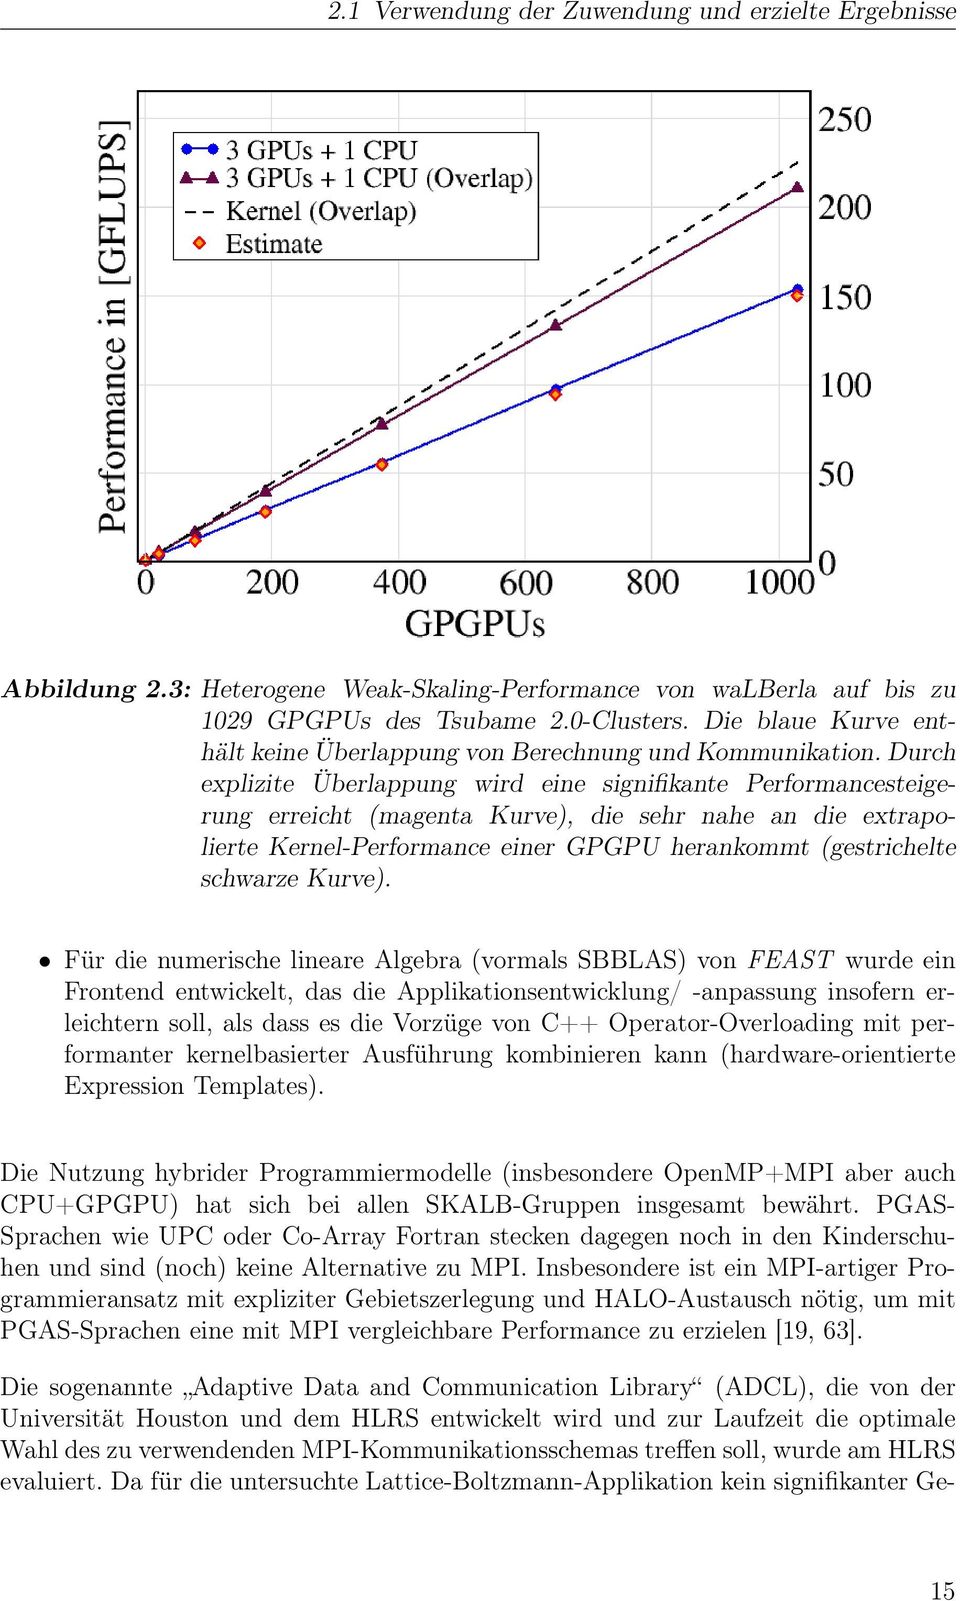 Durch explizite Überlappung wird eine signifikante Performancesteigerung erreicht (magenta Kurve), die sehr nahe an die extrapolierte Kernel-Performance einer GPGPU herankommt (gestrichelte schwarze